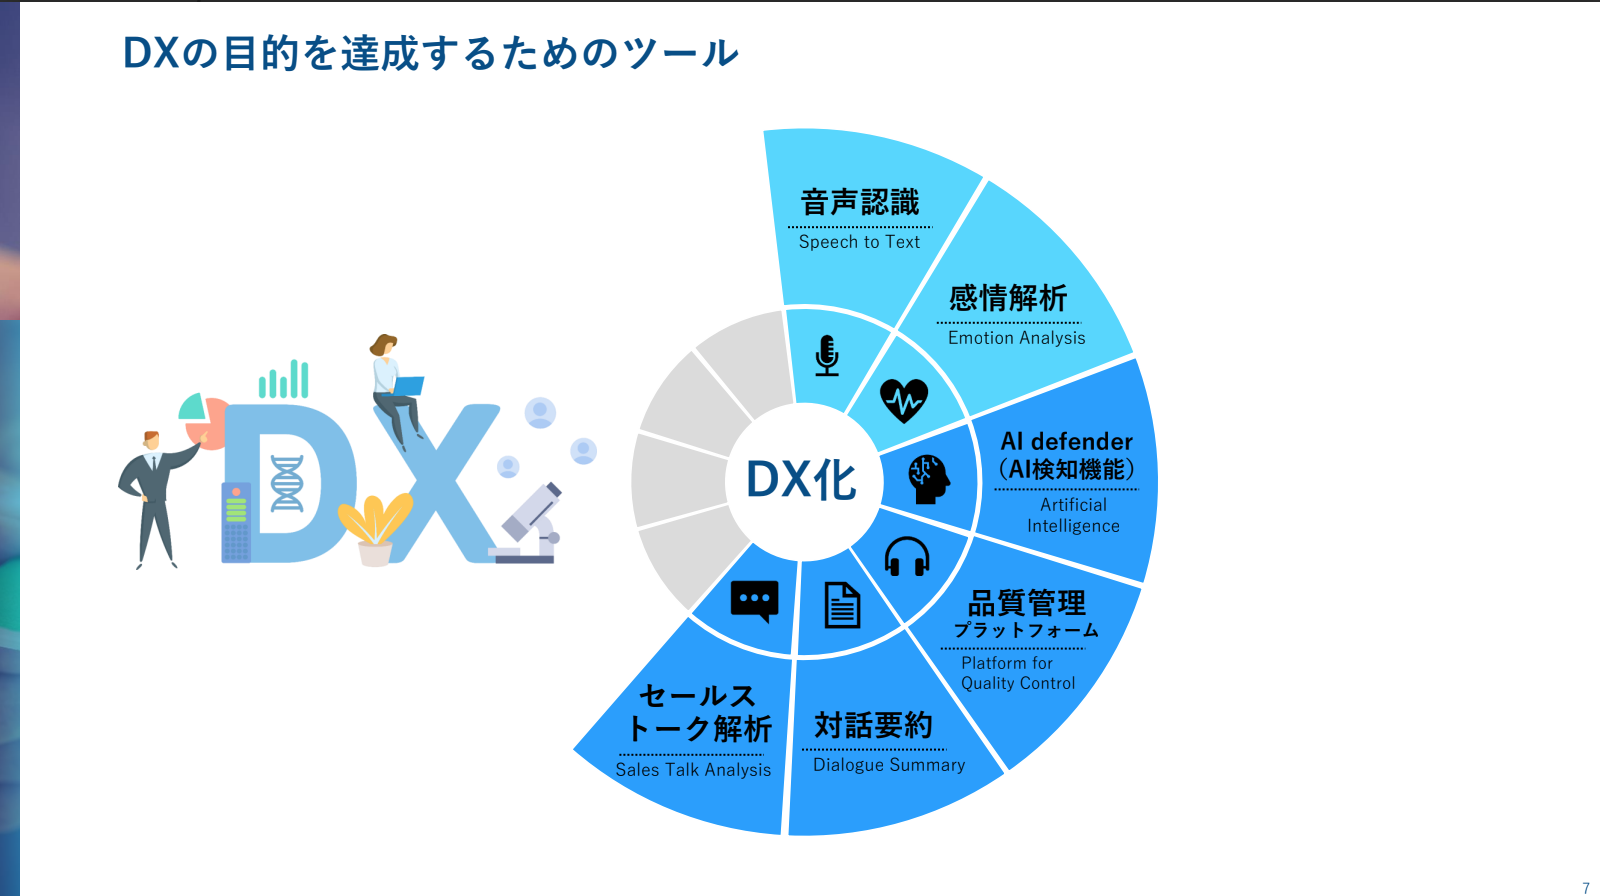 DXの目的を達成するためのツール